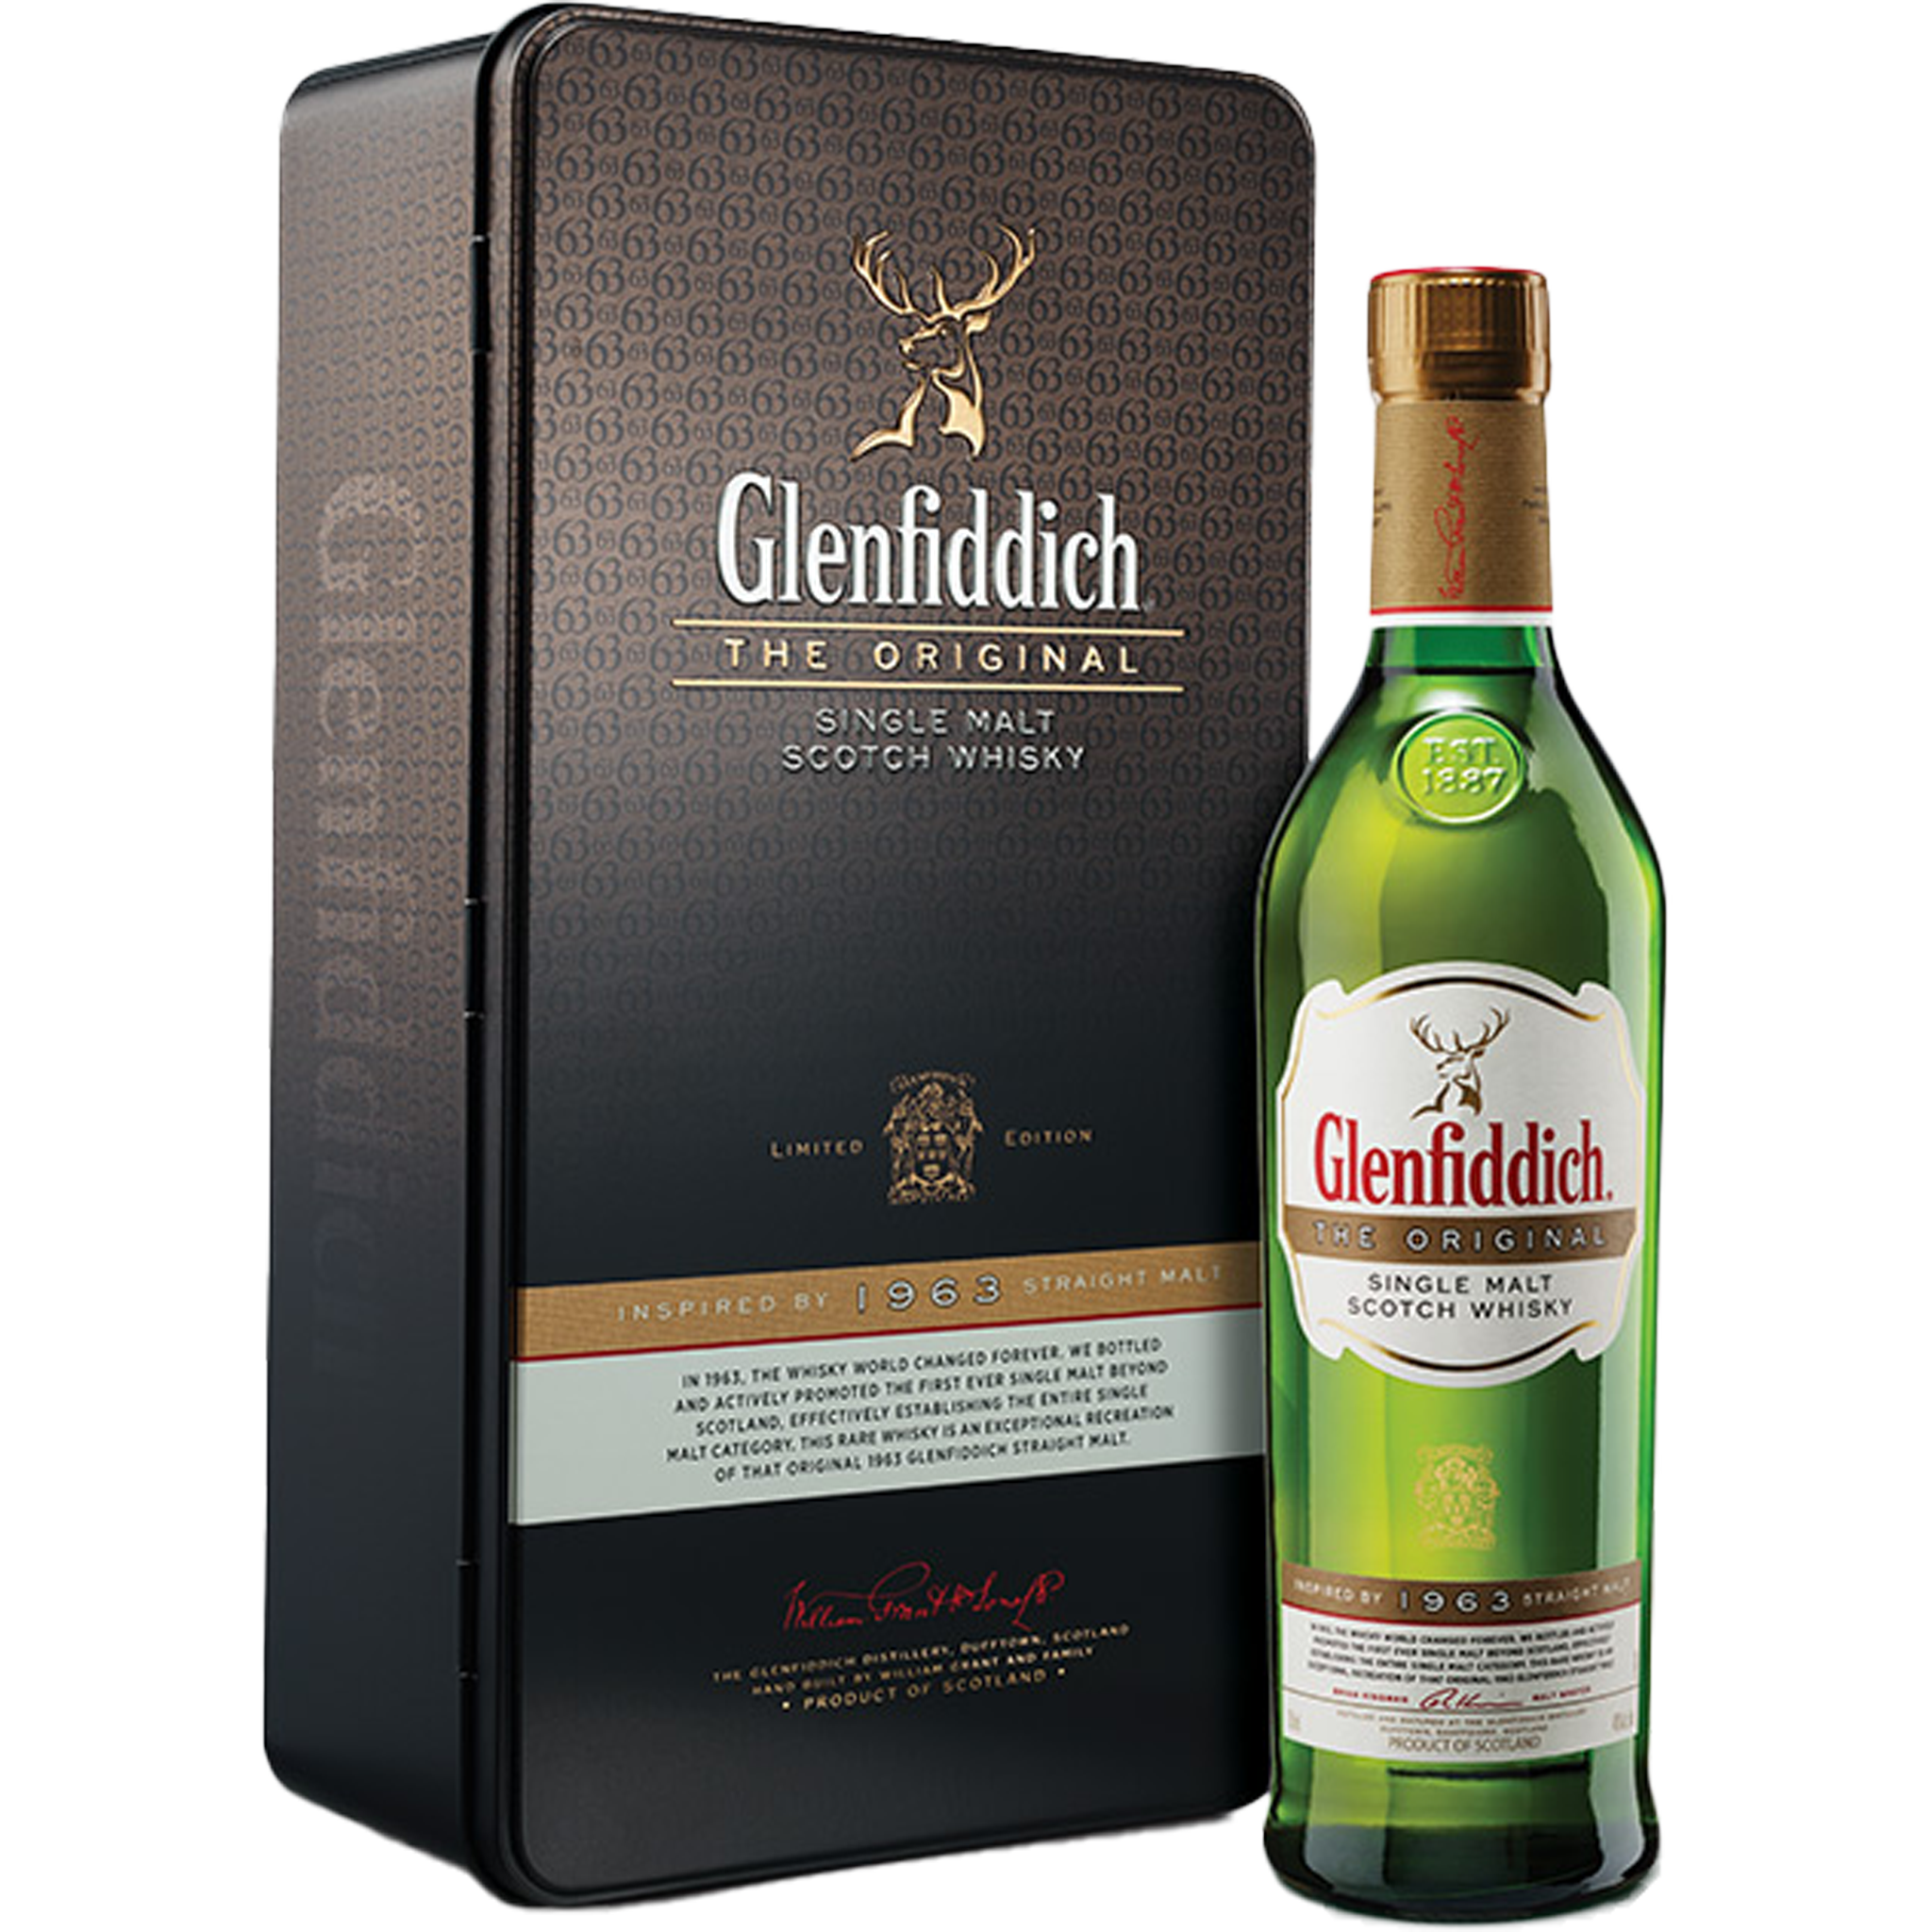 Glenfiddich The Original Single Malt Whisky 1963 With No Box